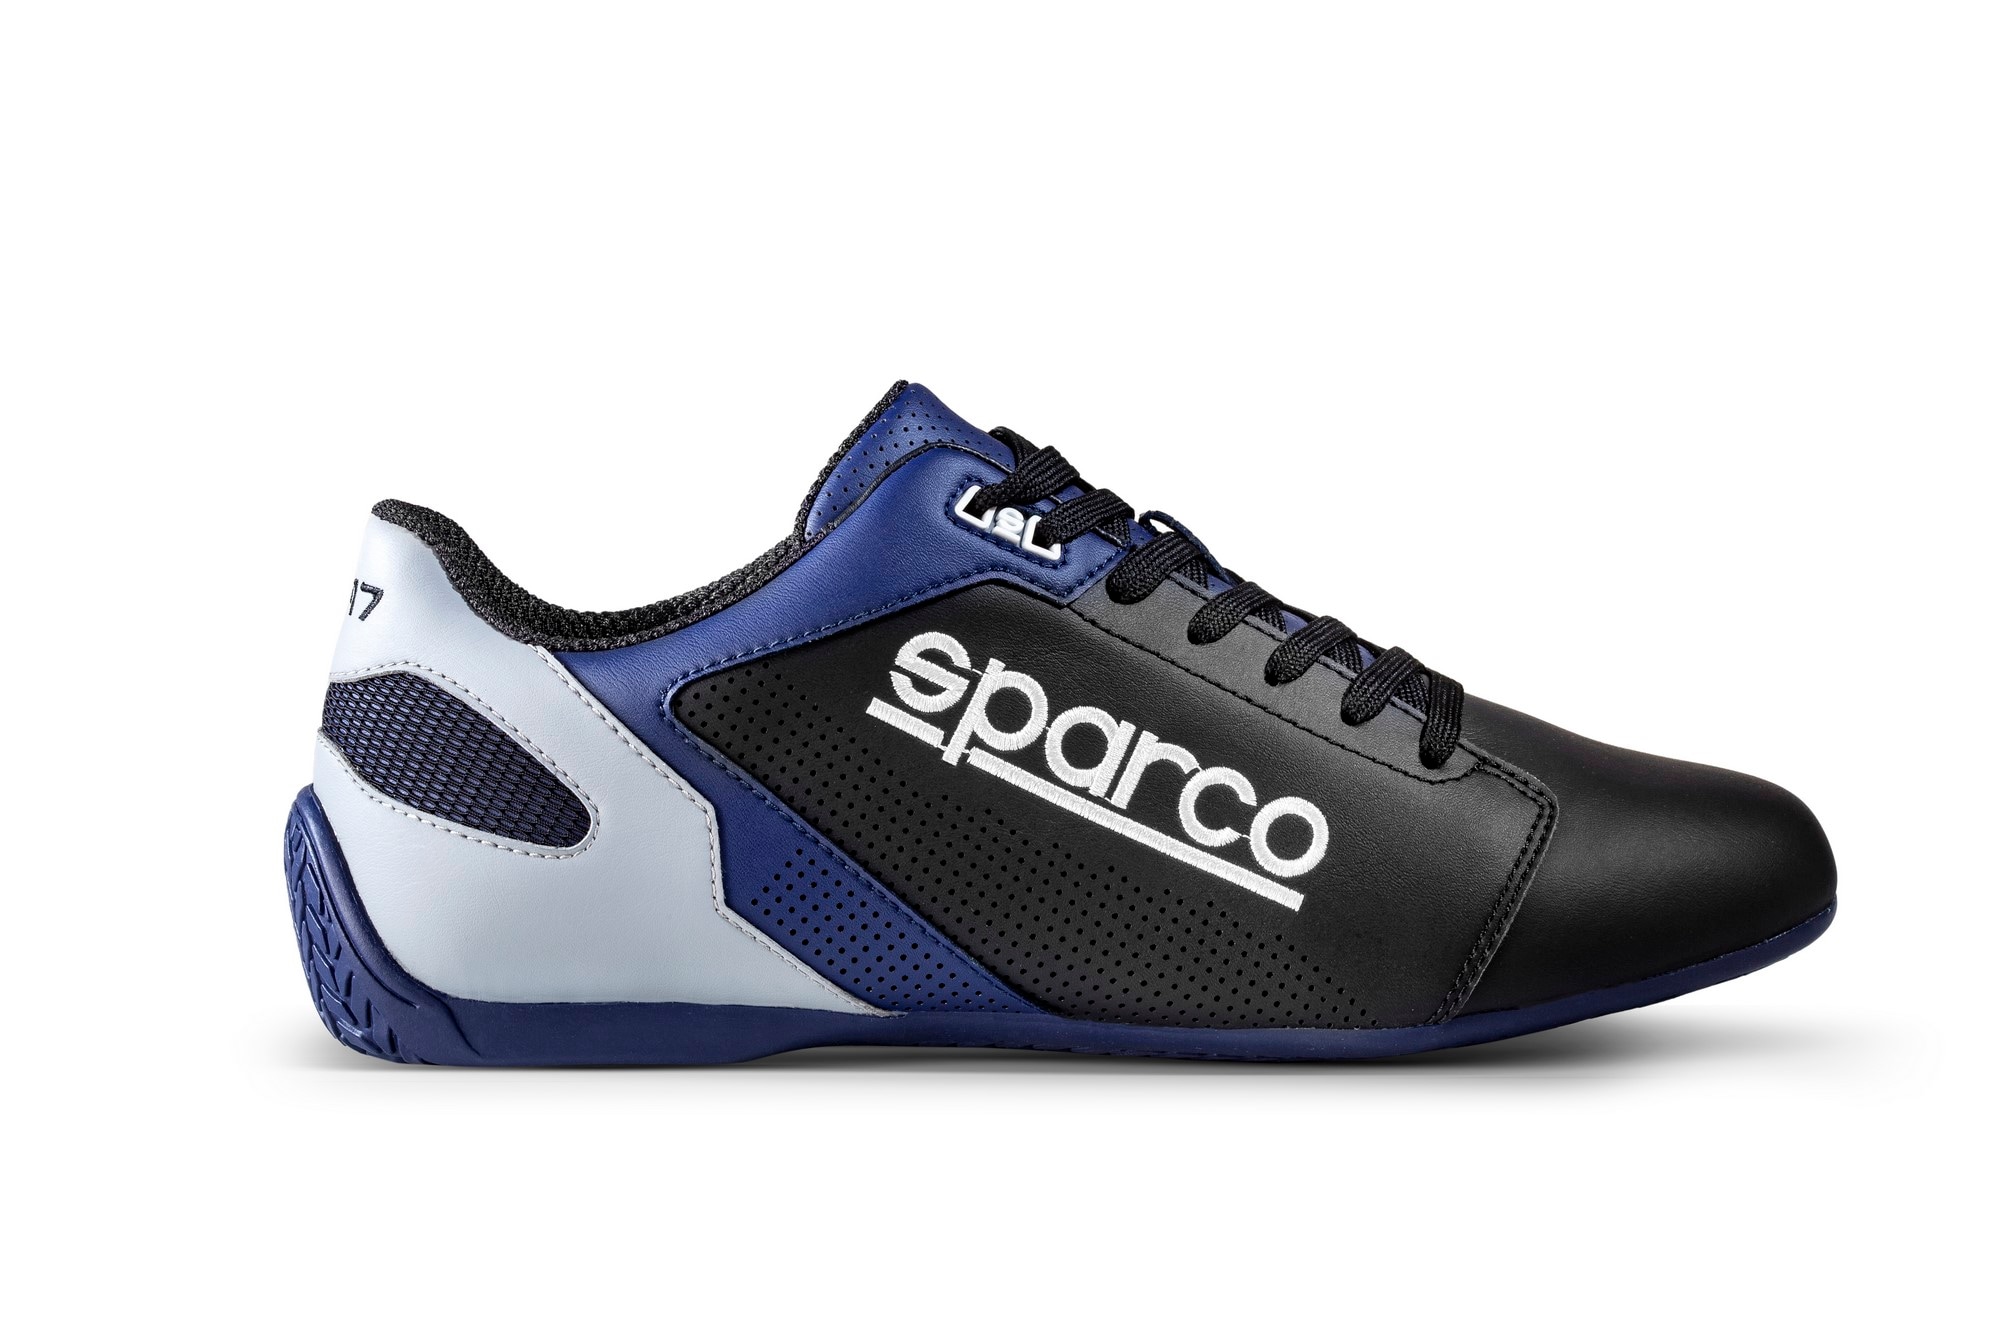 Kengät Sparco SL-17 sininen/musta